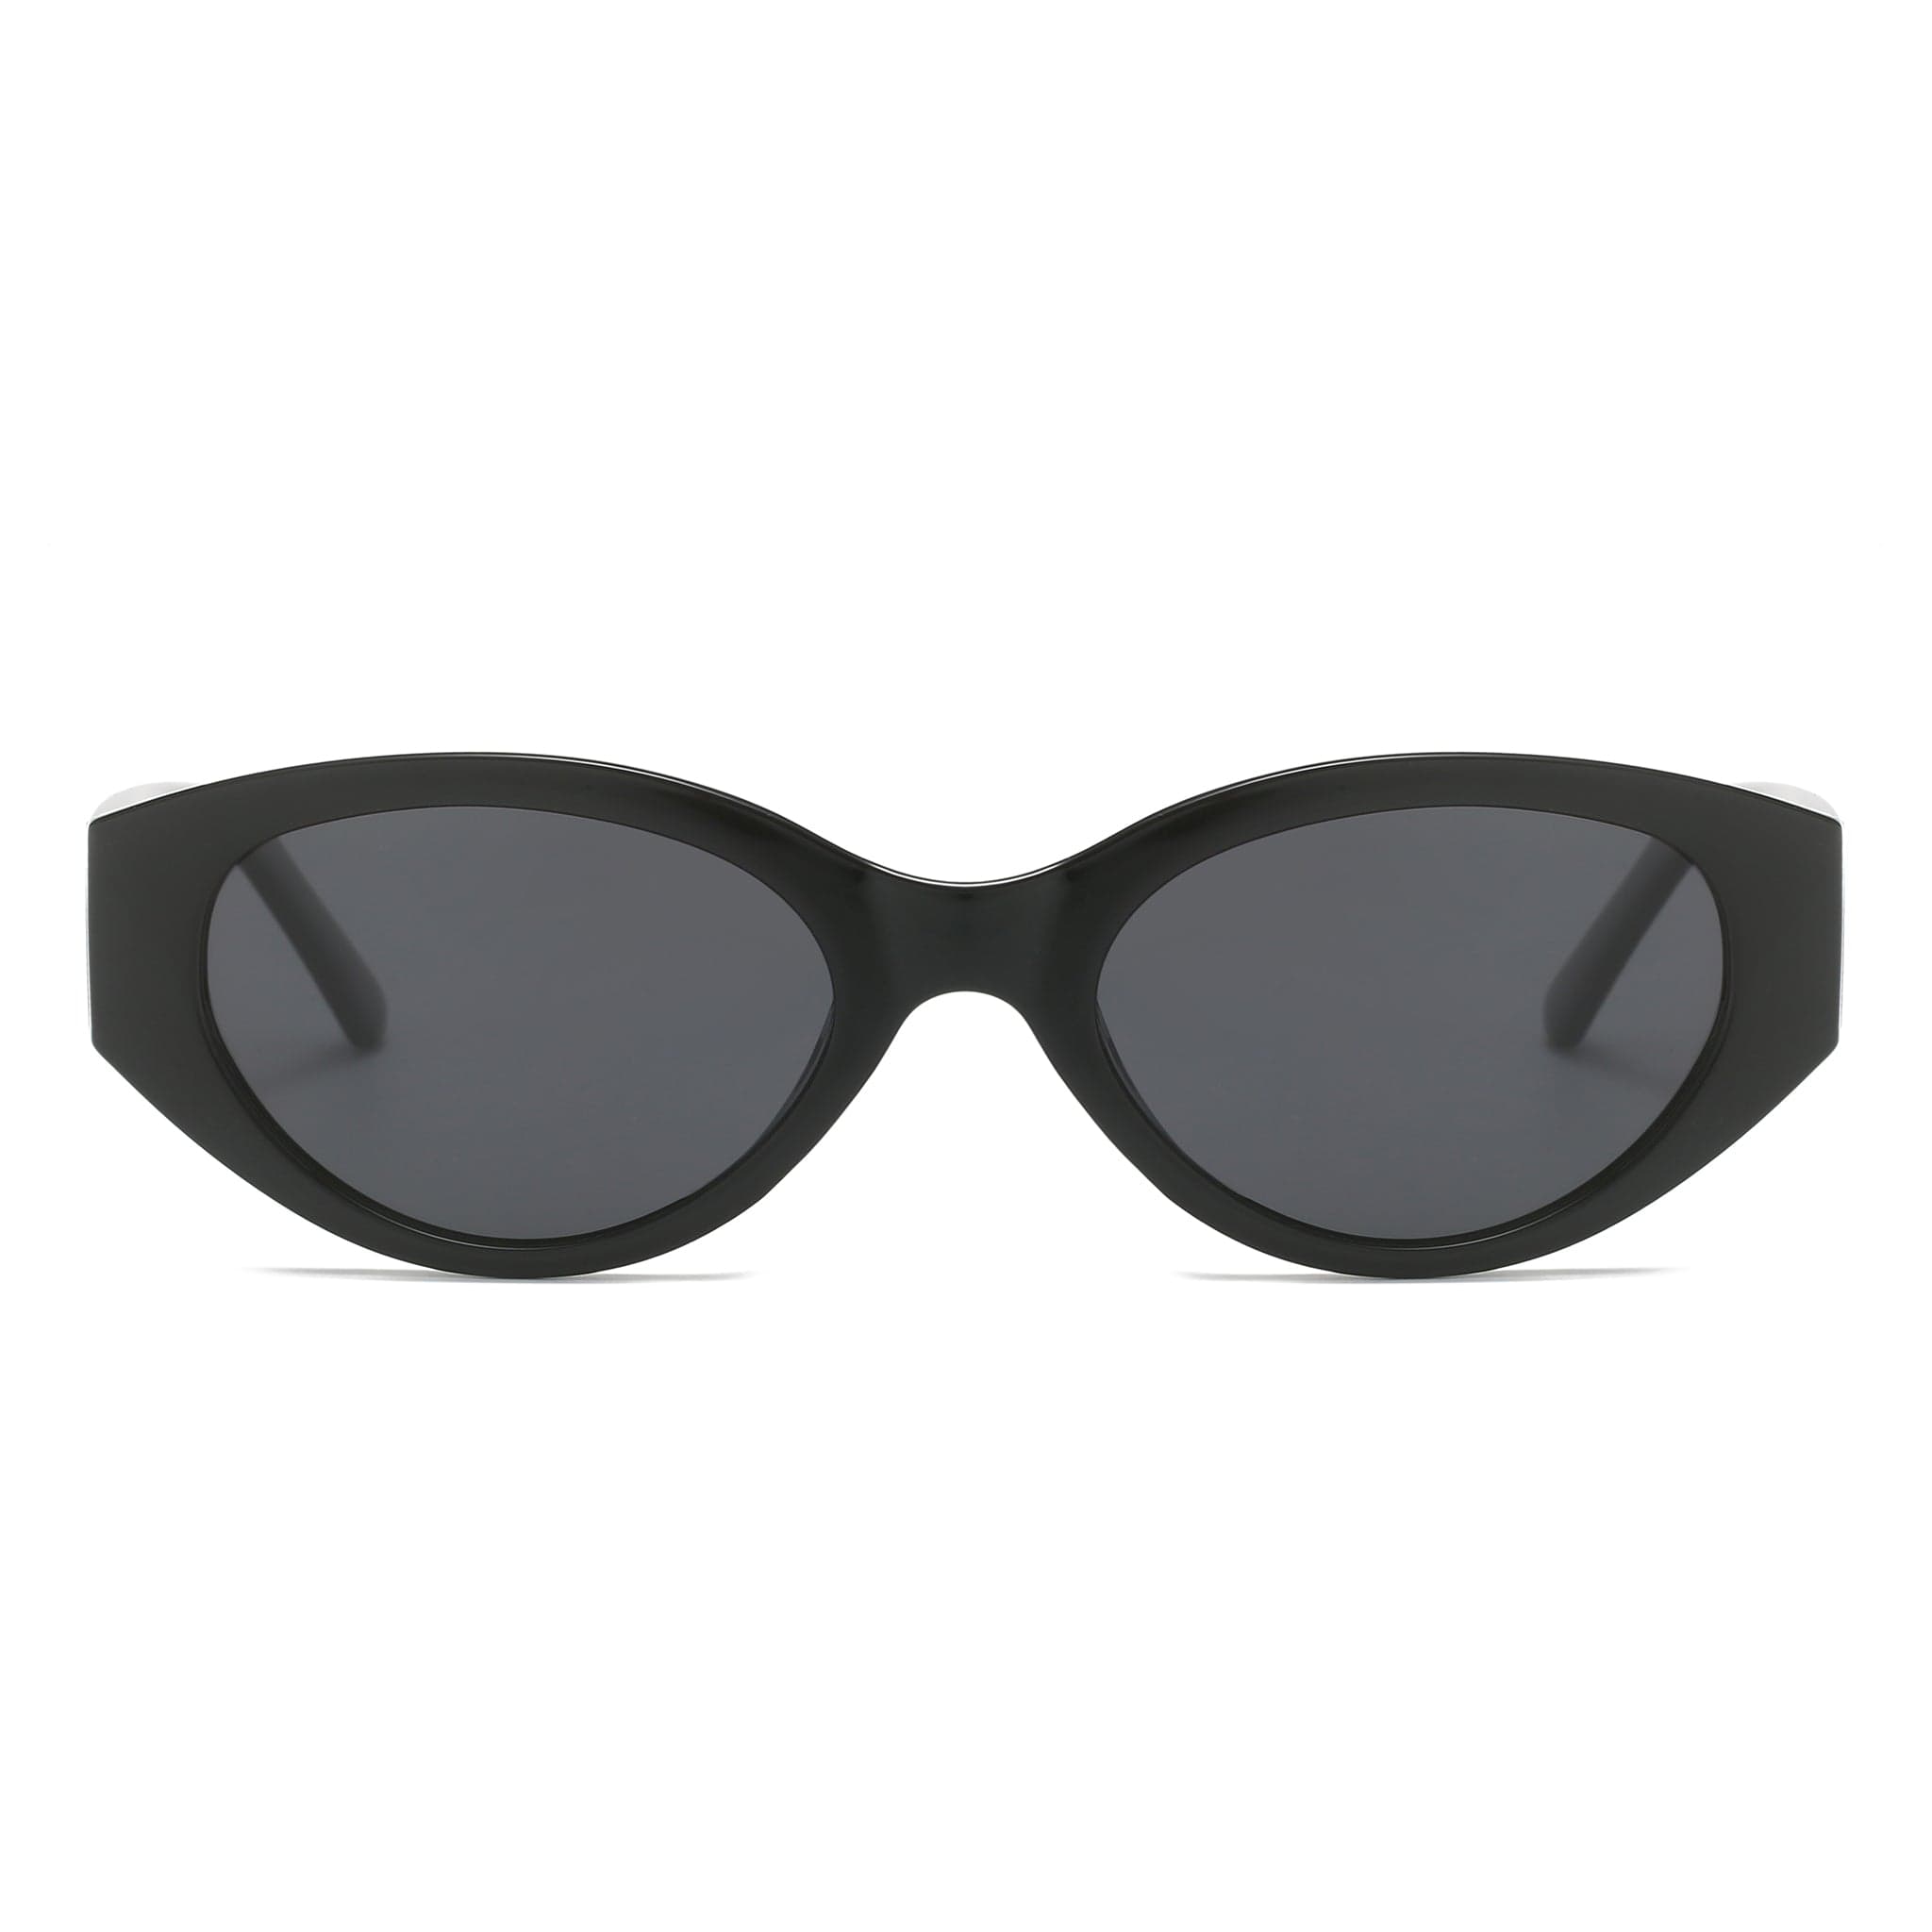 GIUSTIZIERI VECCHI Sunglasses Small / Black PoshPrincess Uno